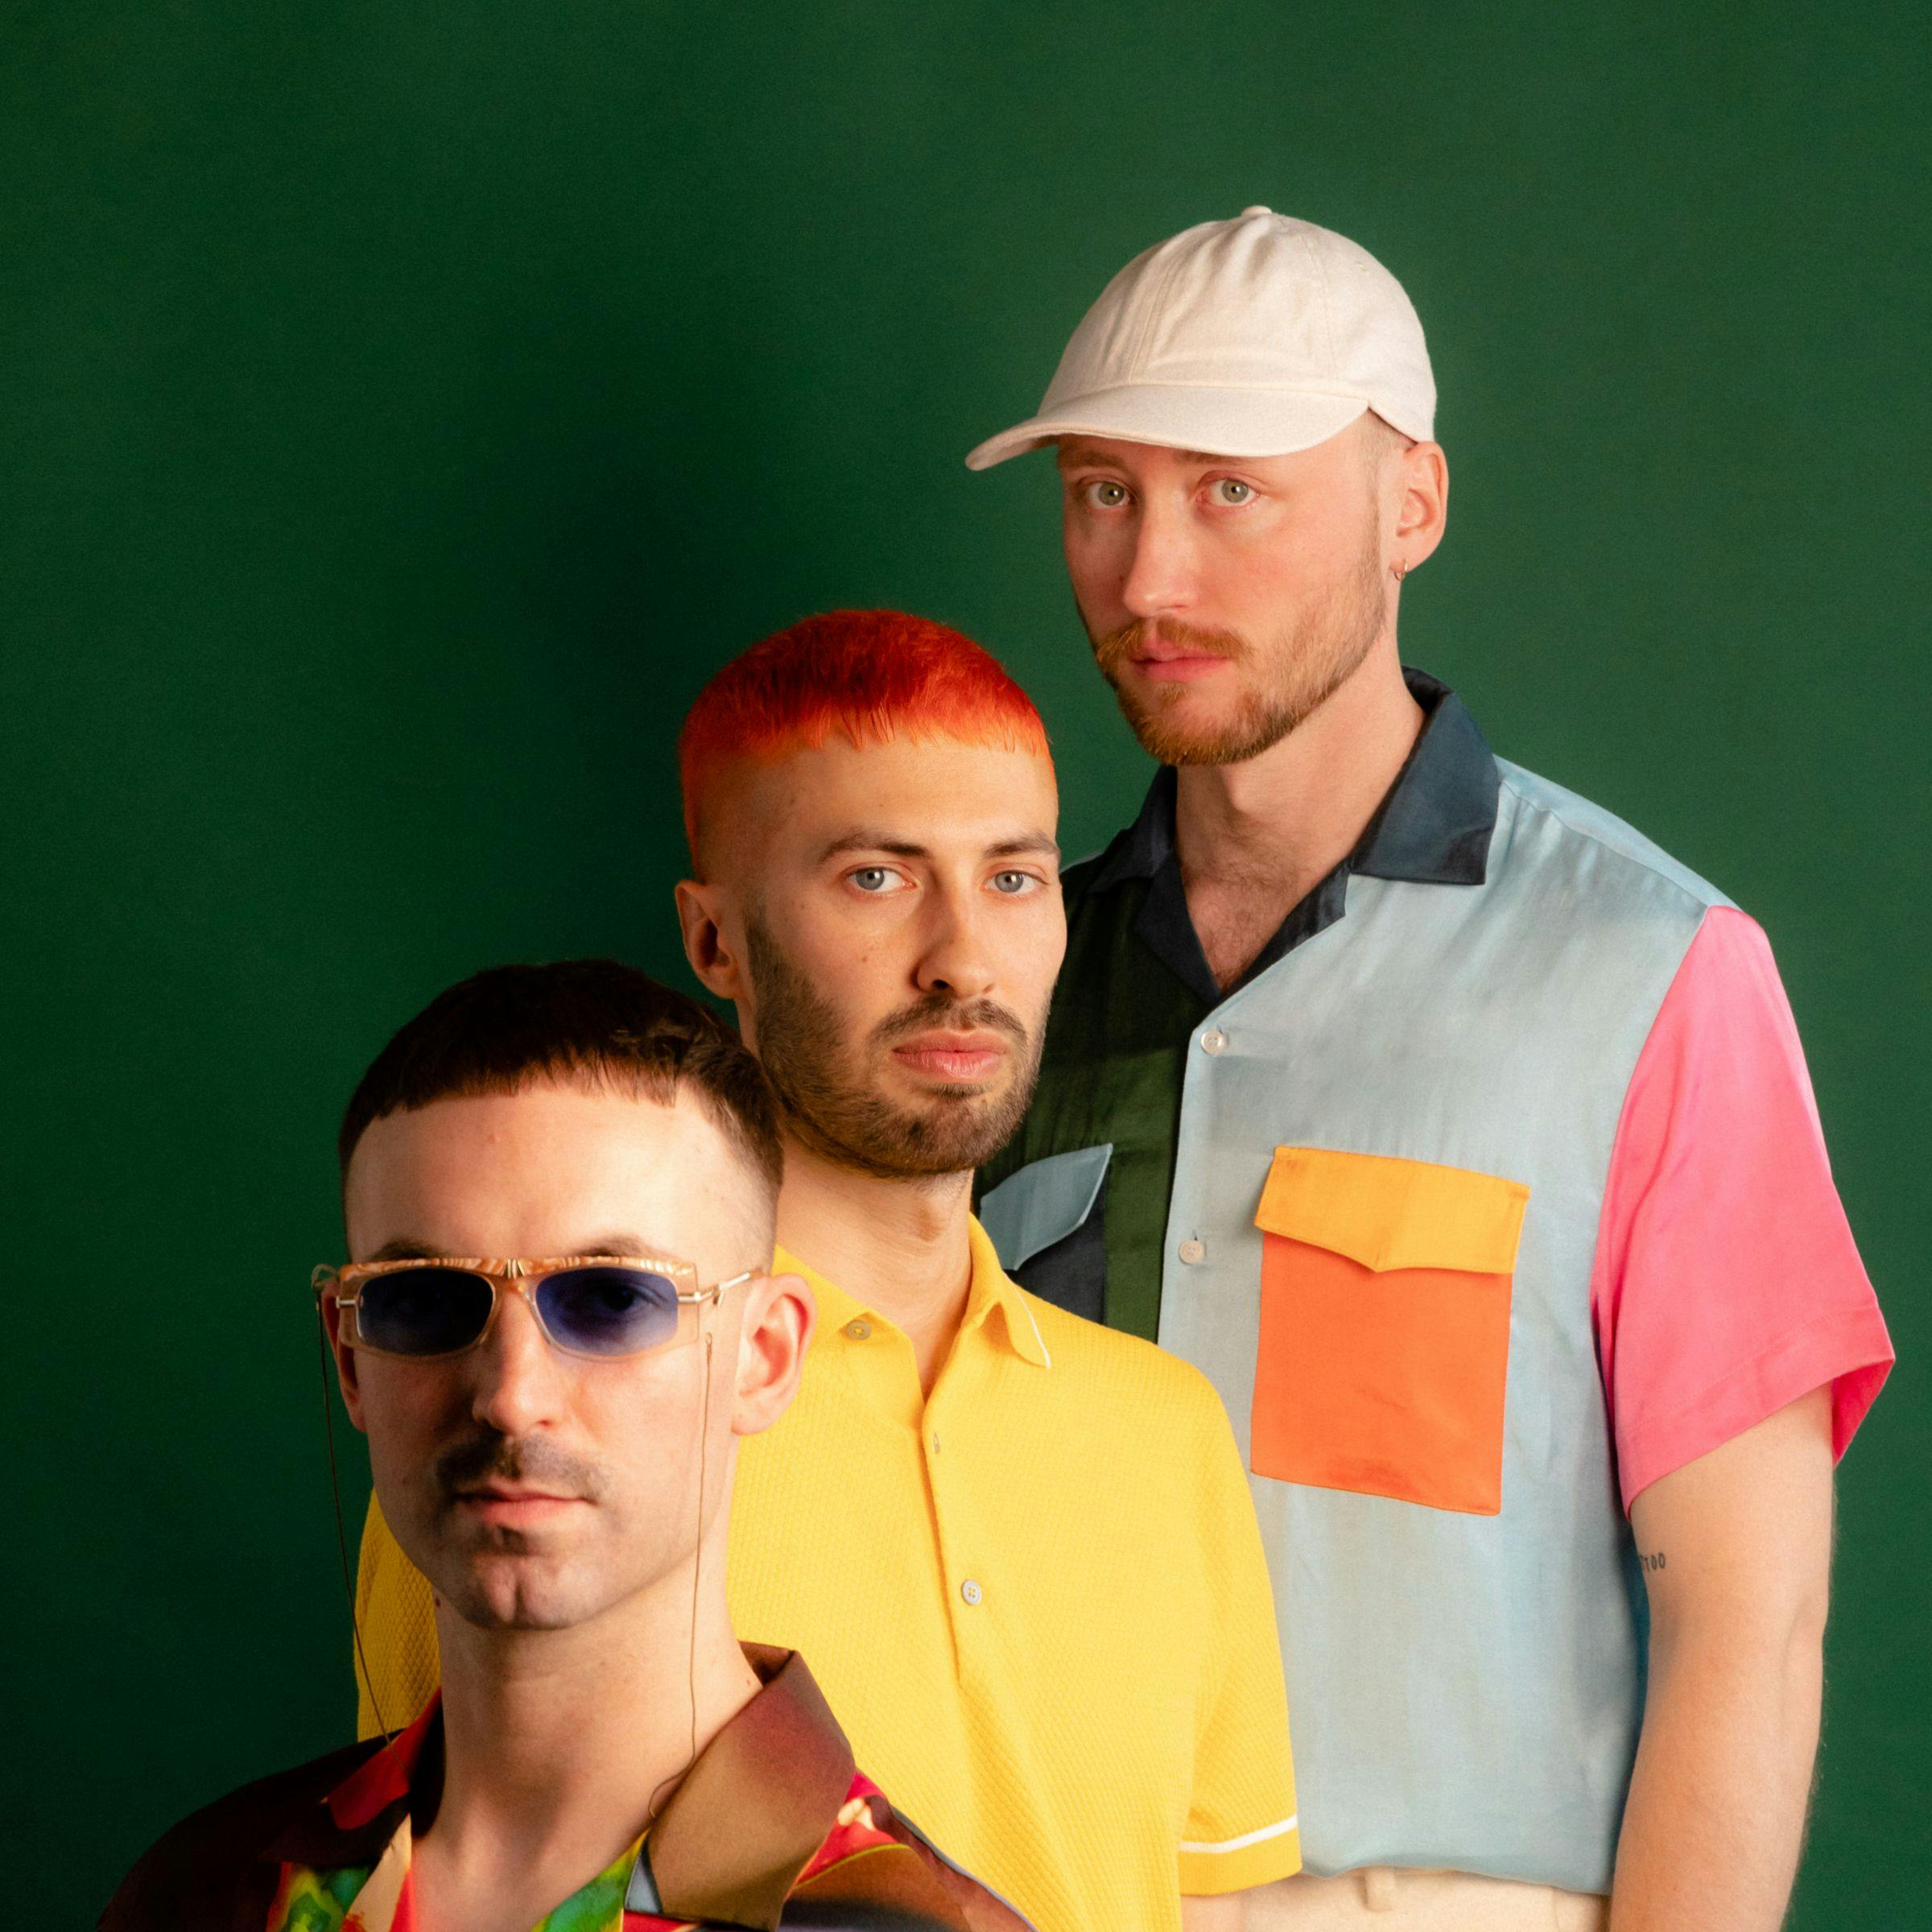 Los tres miembros de la banda Tropikel Ltd. están parados con ropa colorida frente a un fondo verde oscuro mirando directamente a la cámara.